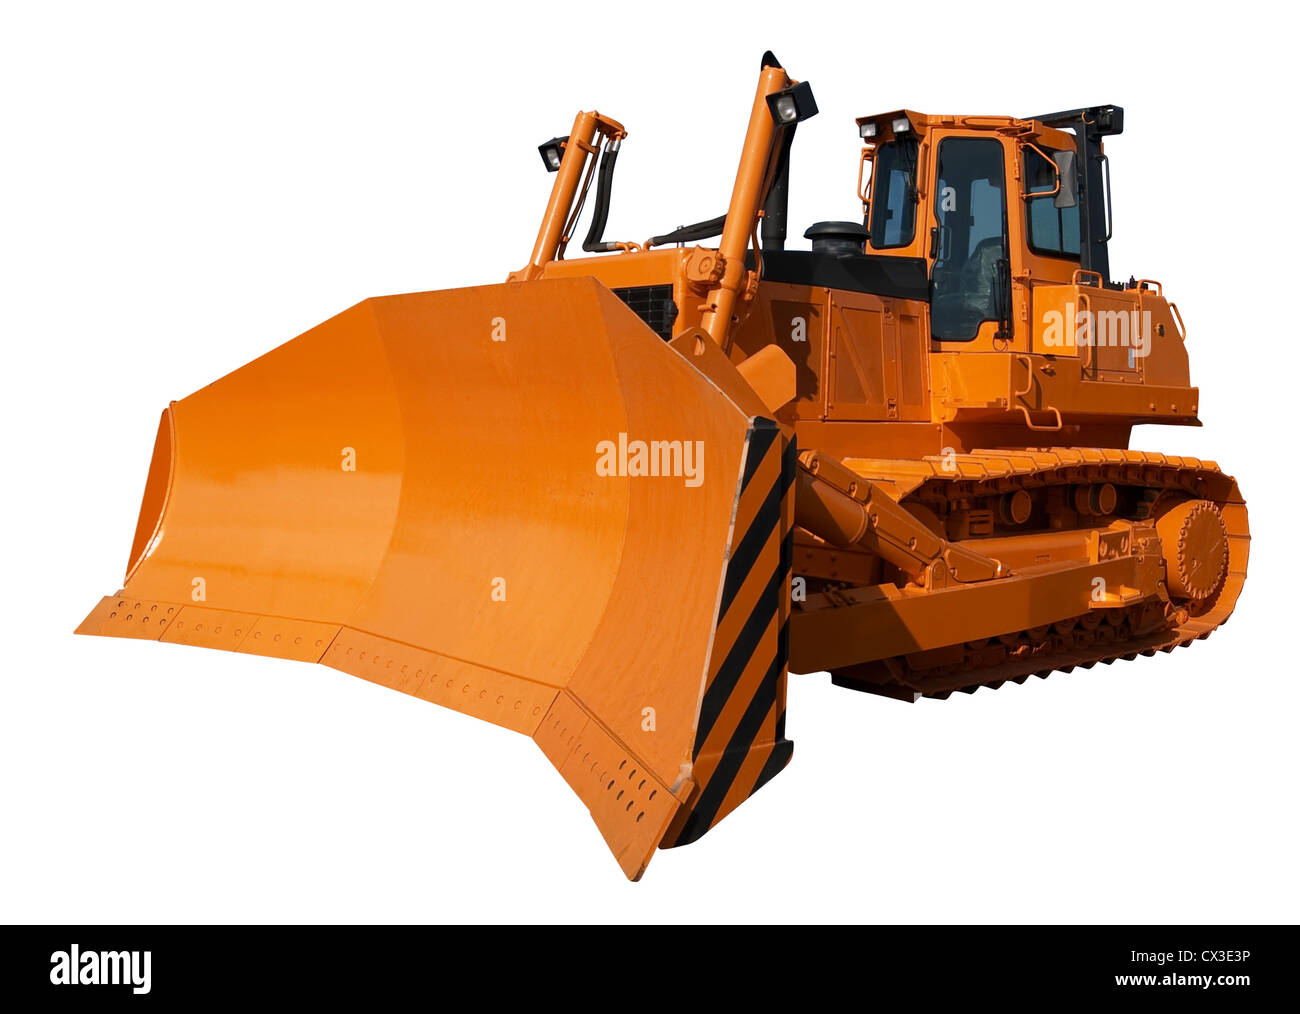 New orange bulldozer isolated on white background Stock Photo